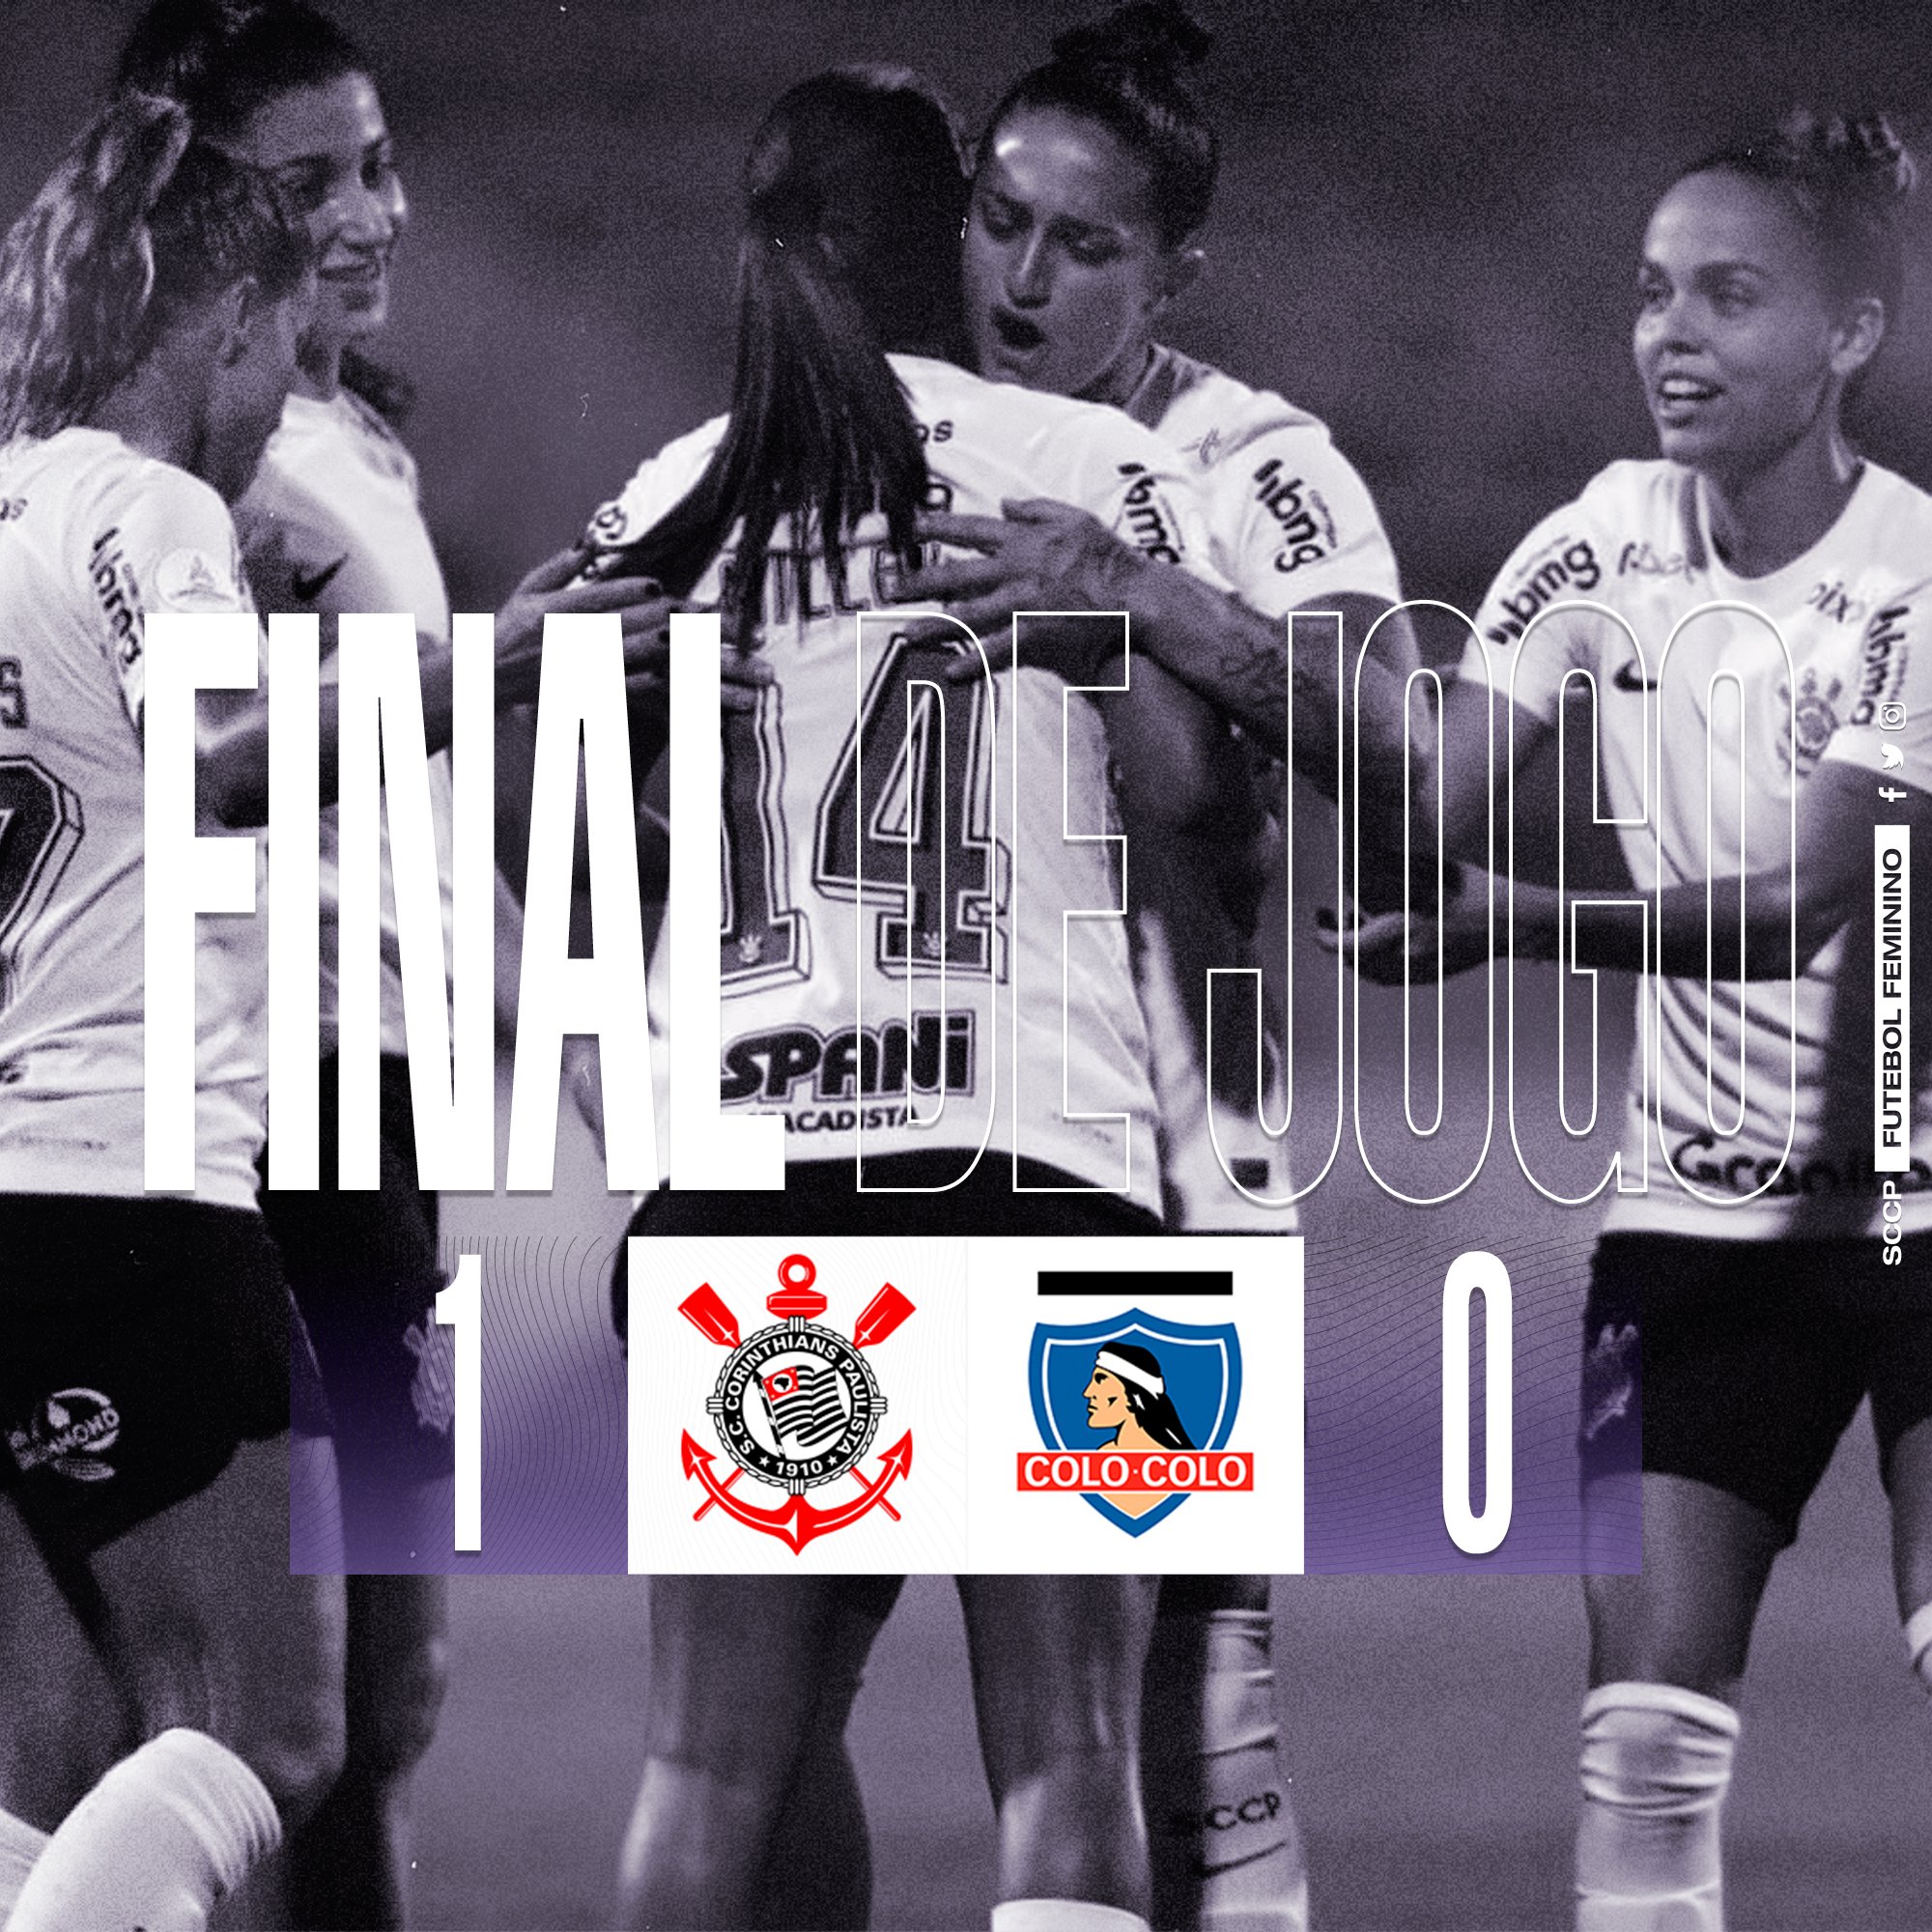 Corinthians Futebol Feminino on X: FIM DE JOGO! E que jogo rs. O